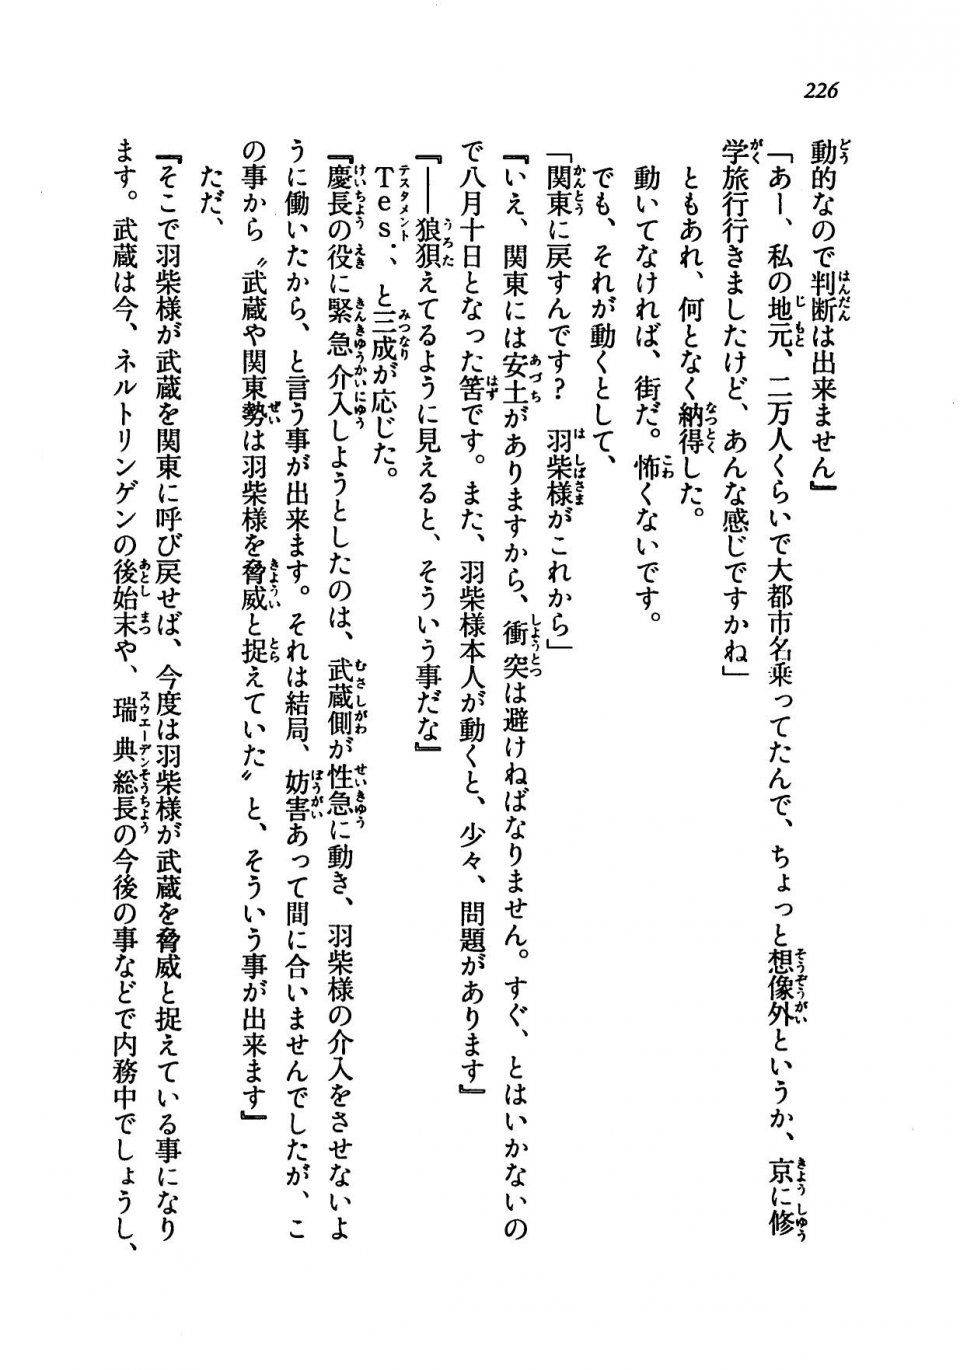 Kyoukai Senjou no Horizon LN Vol 19(8A) - Photo #226